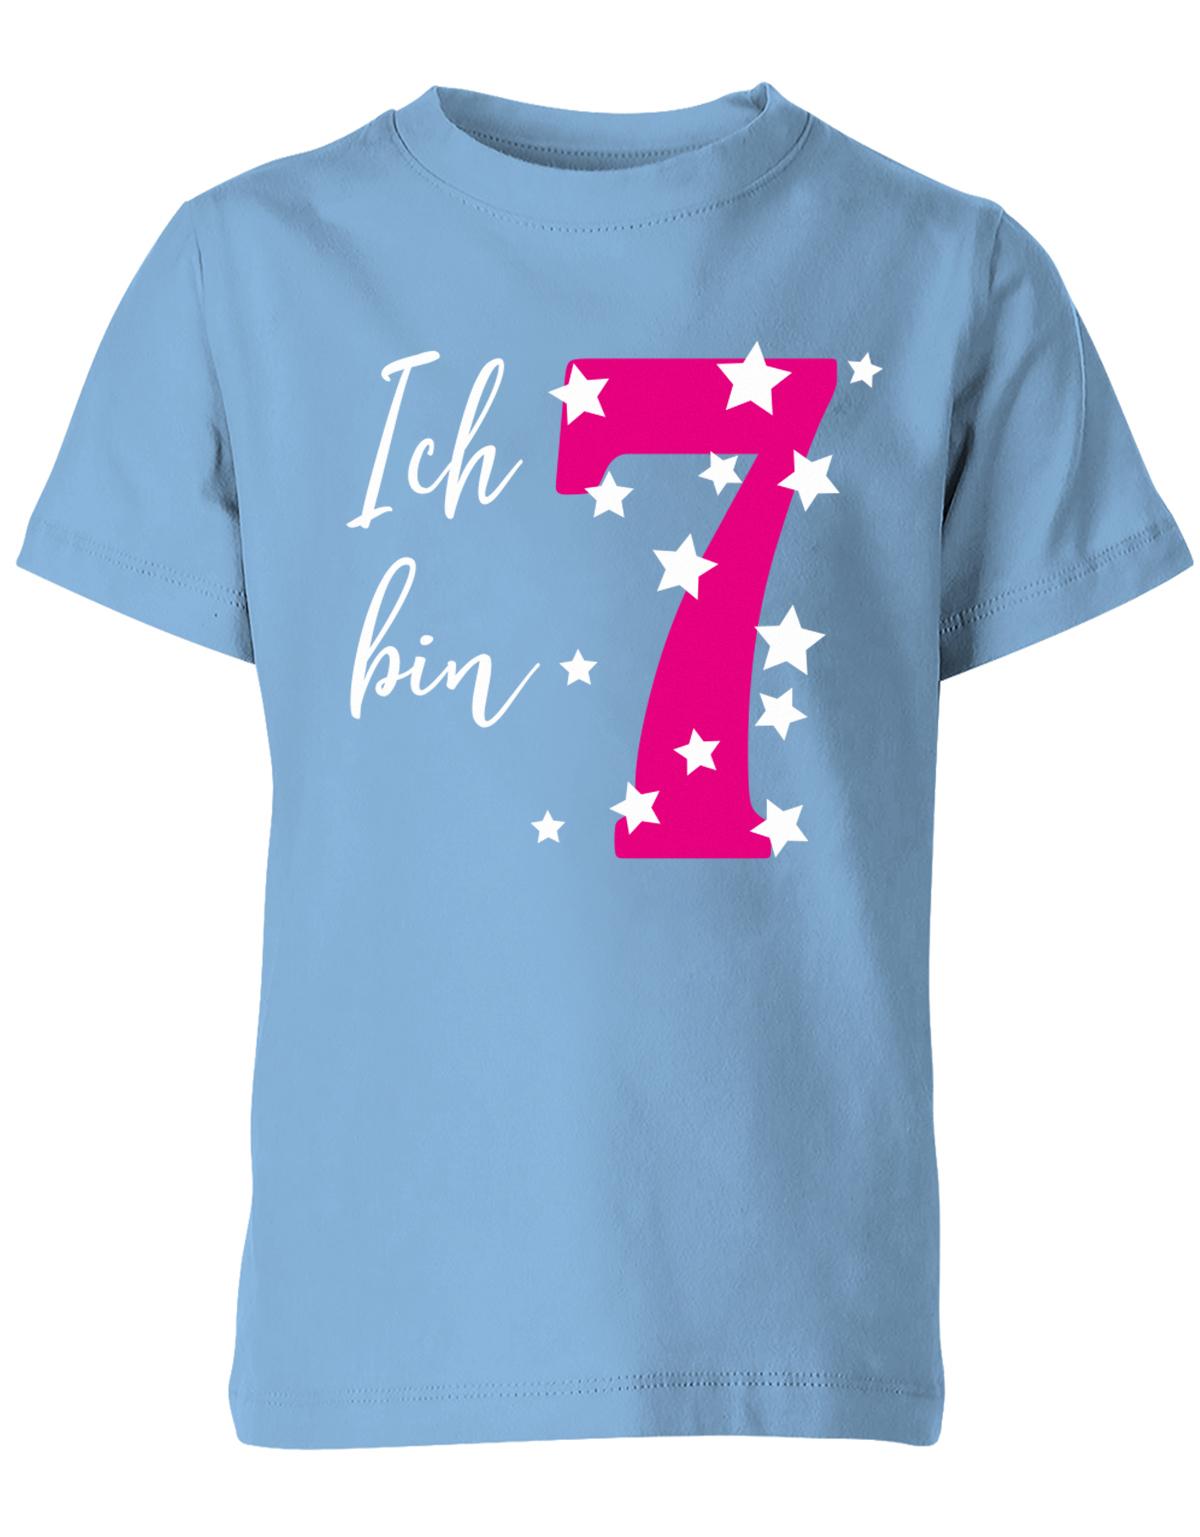 ich-bin-7-sterne-sternchen-geburtstag-kinder-shirt-hellblau